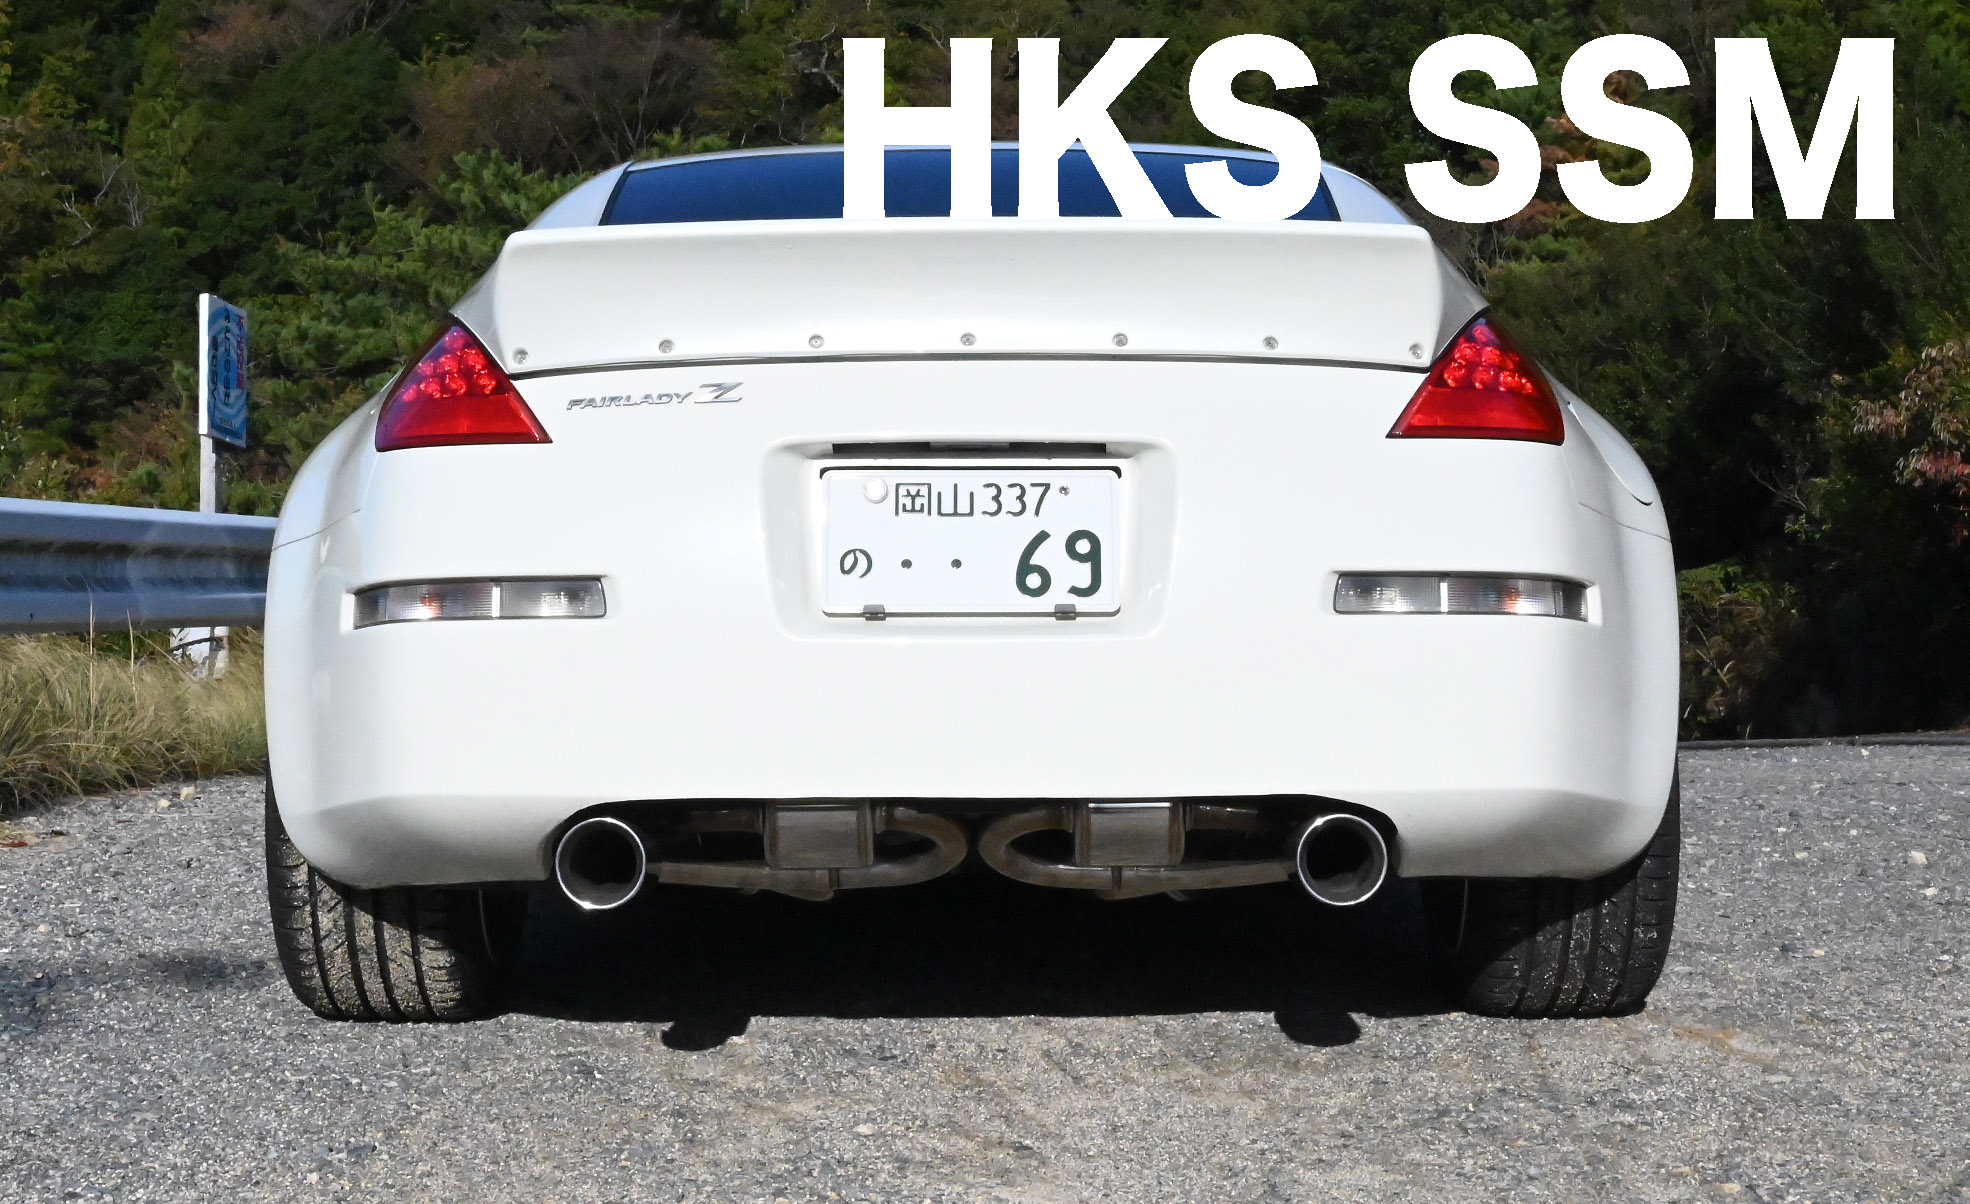 HKS SSM(スーパーサウンドマスター)マフラーに交換！サクラムとの違い 